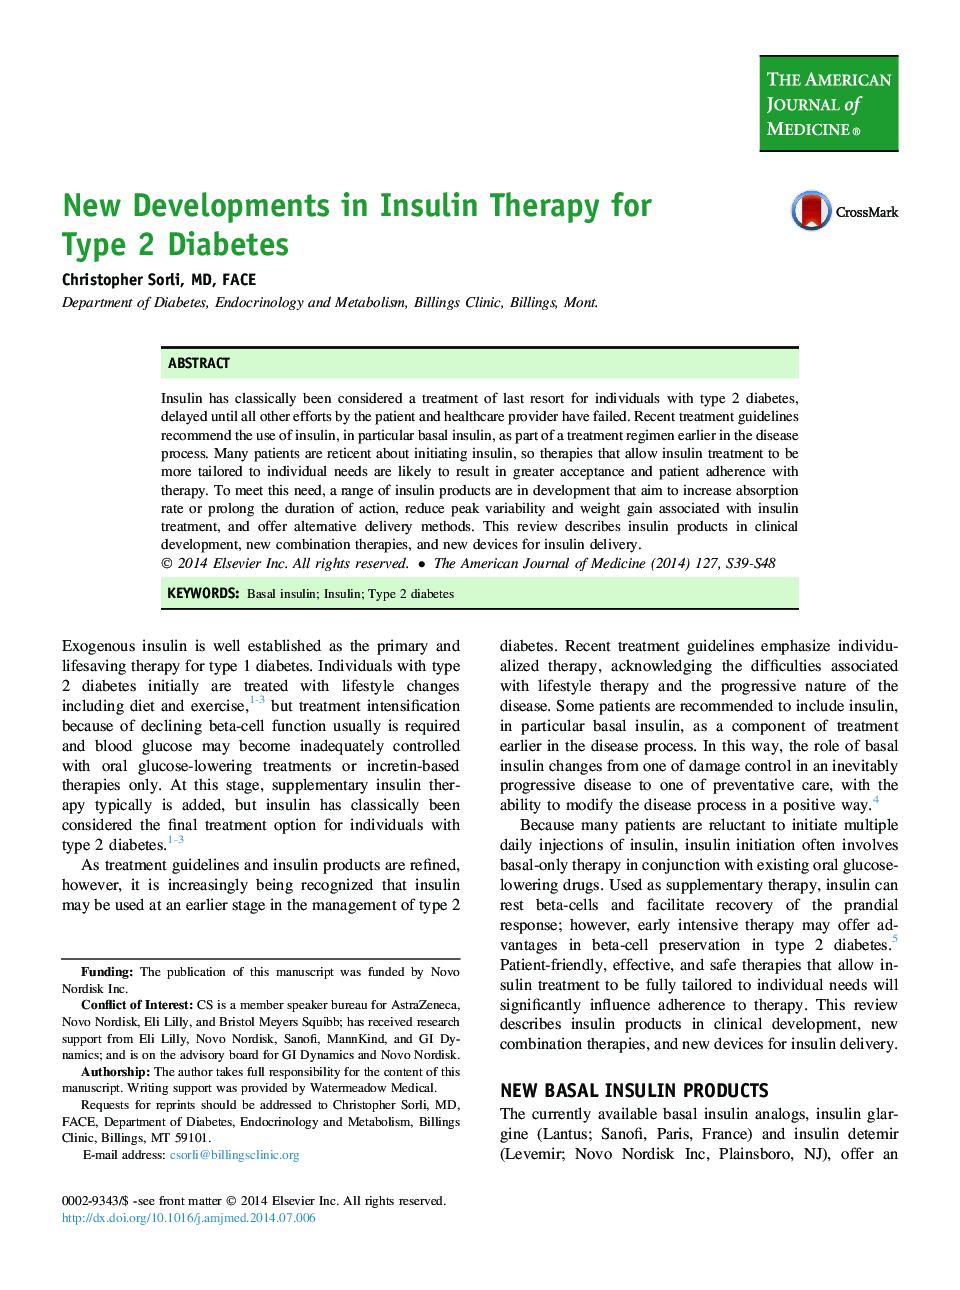 پیشرفت های جدید در درمان انسولین برای دیابت نوع 2 